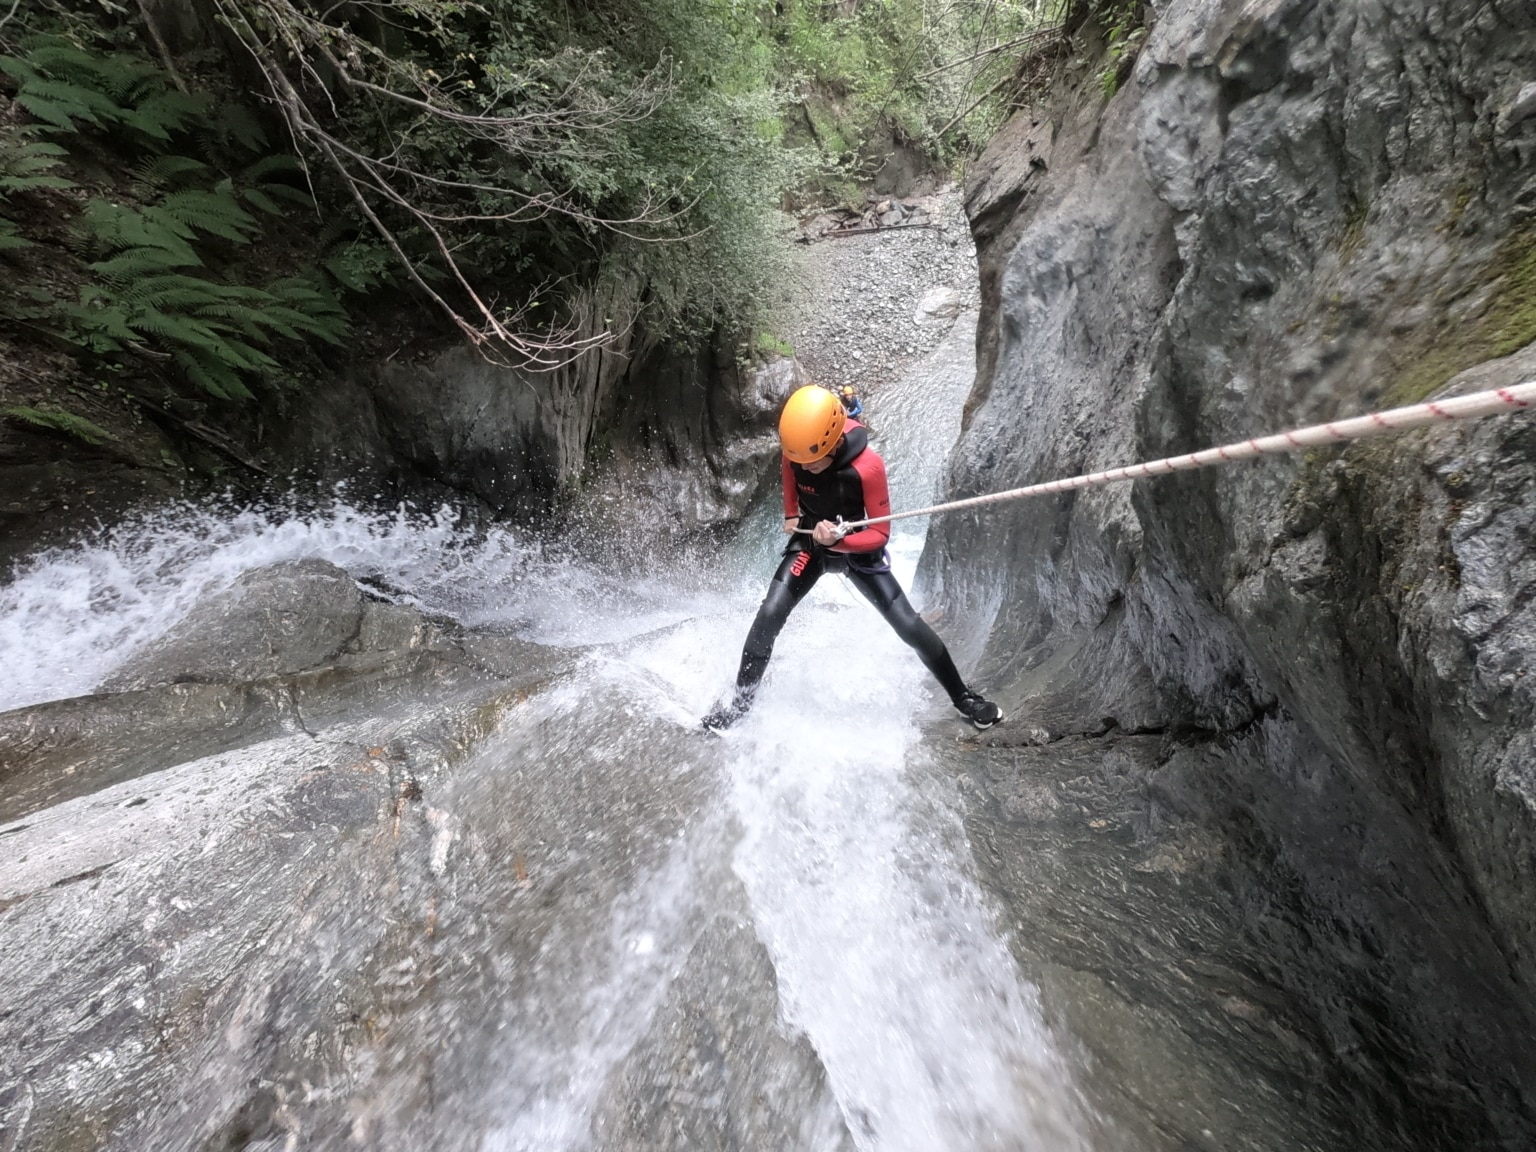 Photographie prise dans le Canyoning de Bénétant, un homme descend une cascade en rappel